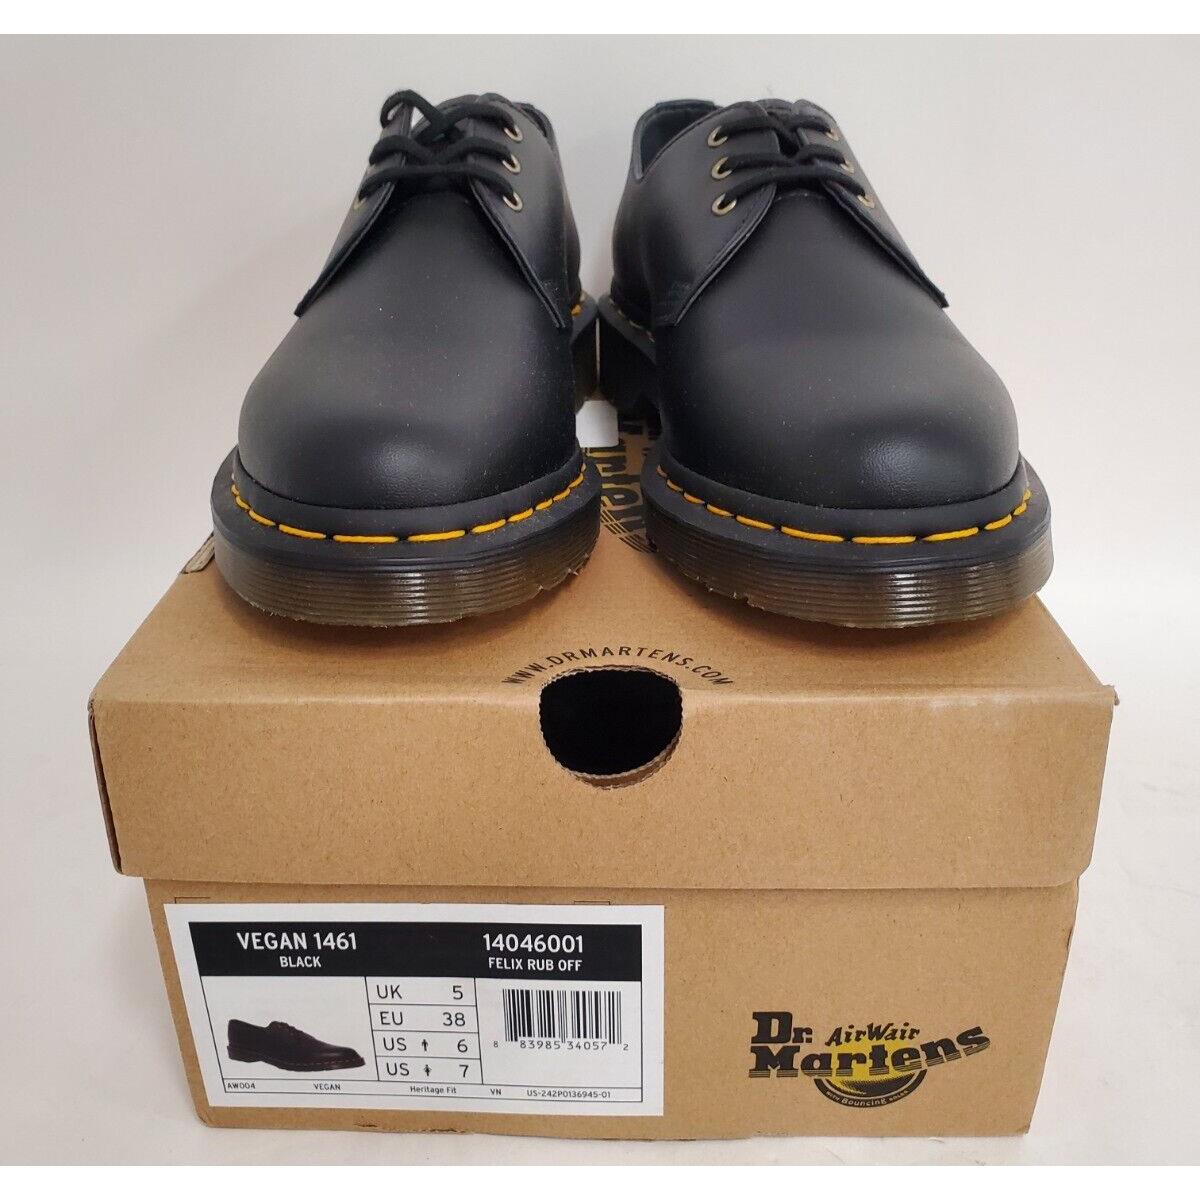 Dr. Doc Martens Unisex Adult Vegan Oxford Shoes Size 6 Men 7 Women - Black